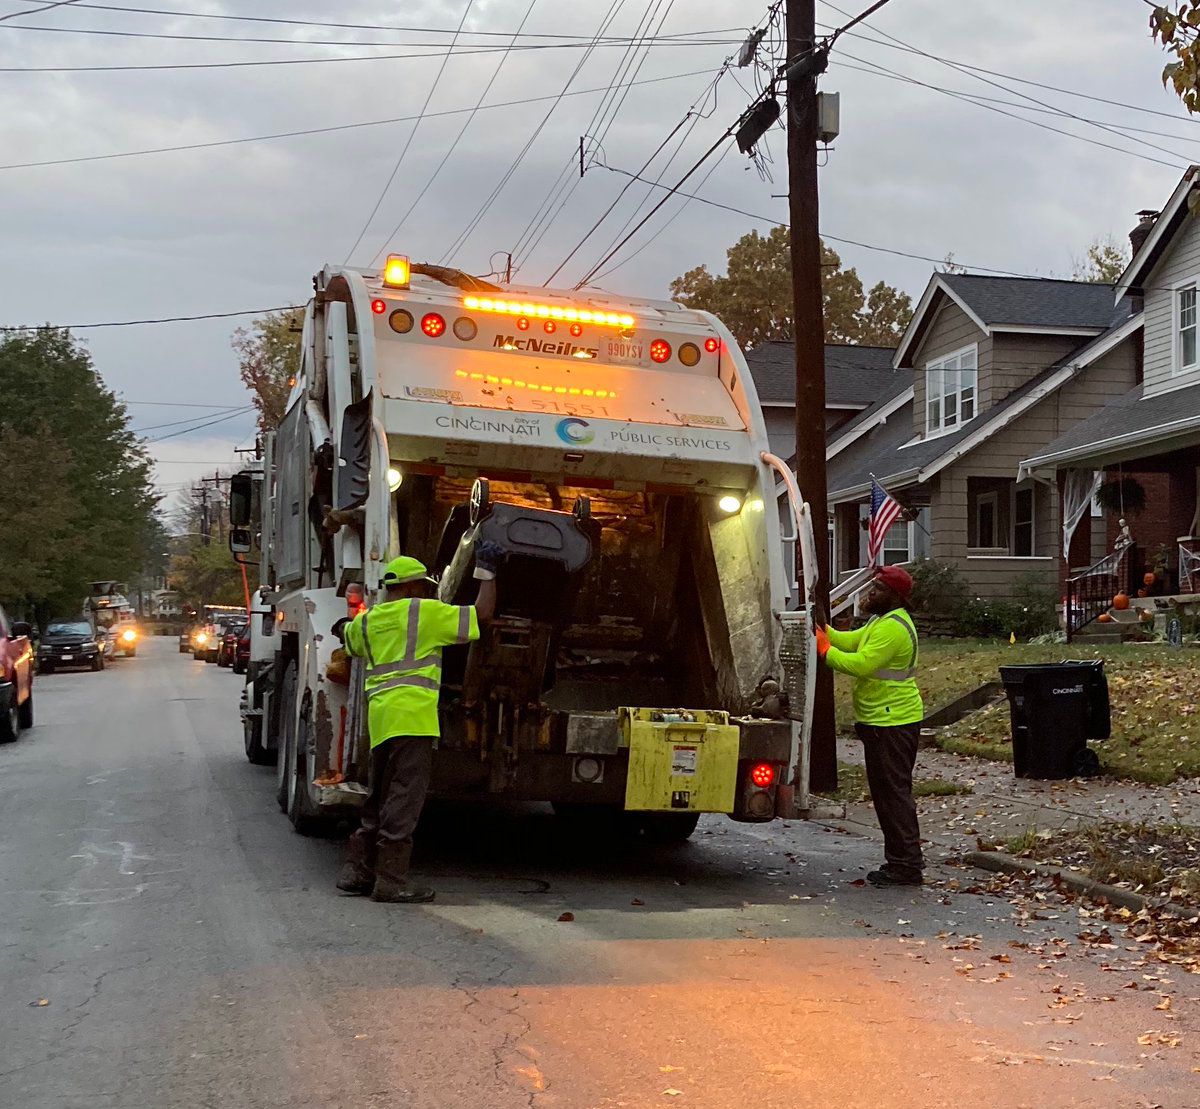 Cincinnati garbage truck and sanitation workers